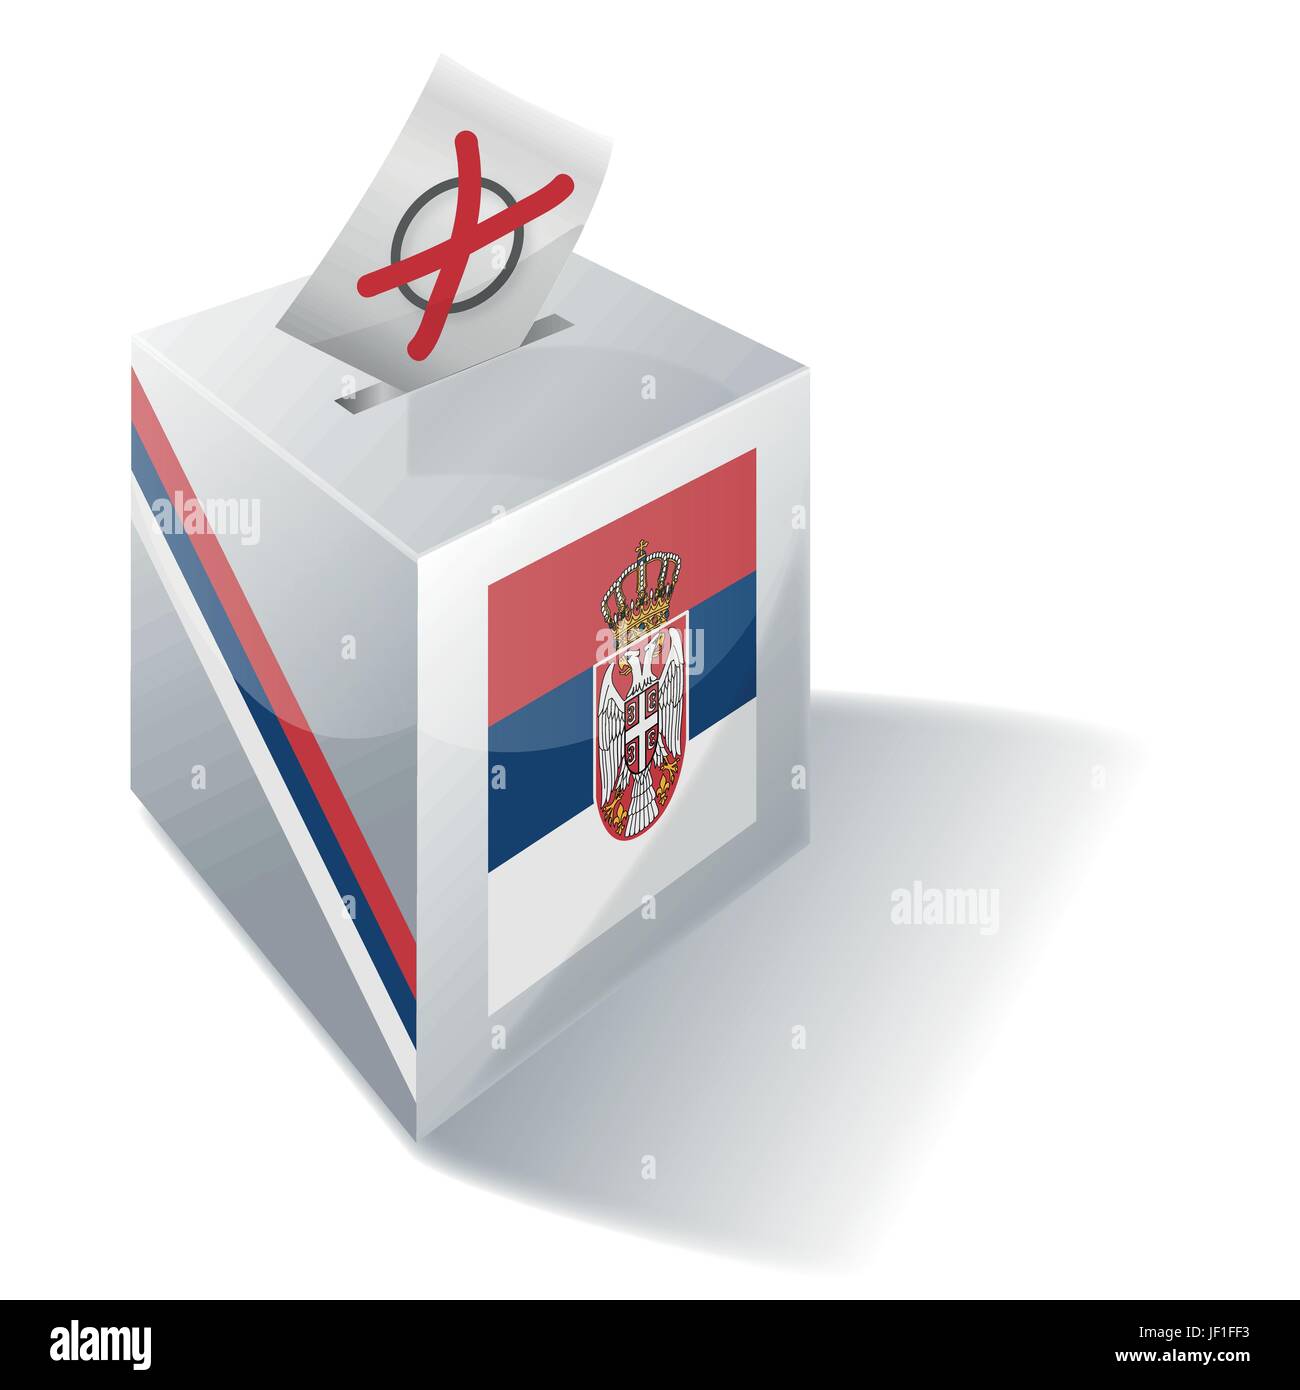 Centre, serbe, balkans, Serbie, social, croix, urnes, drapeau, centre, vote, vote, Illustration de Vecteur